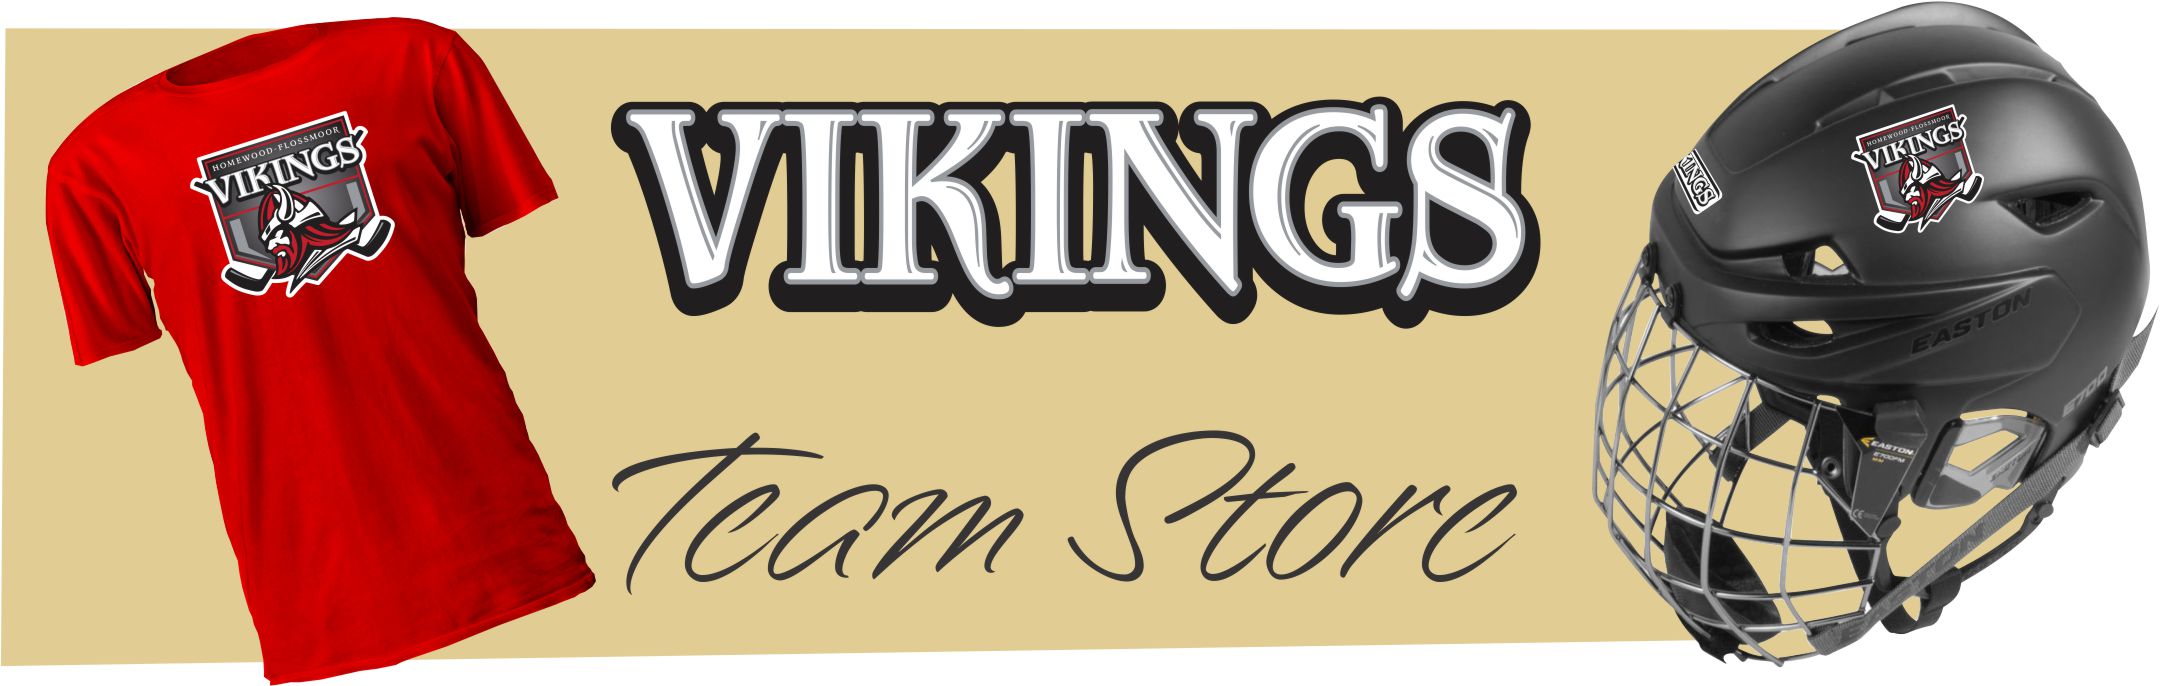 Homewood Flossmoor Vikings Hockey Team Store Banner